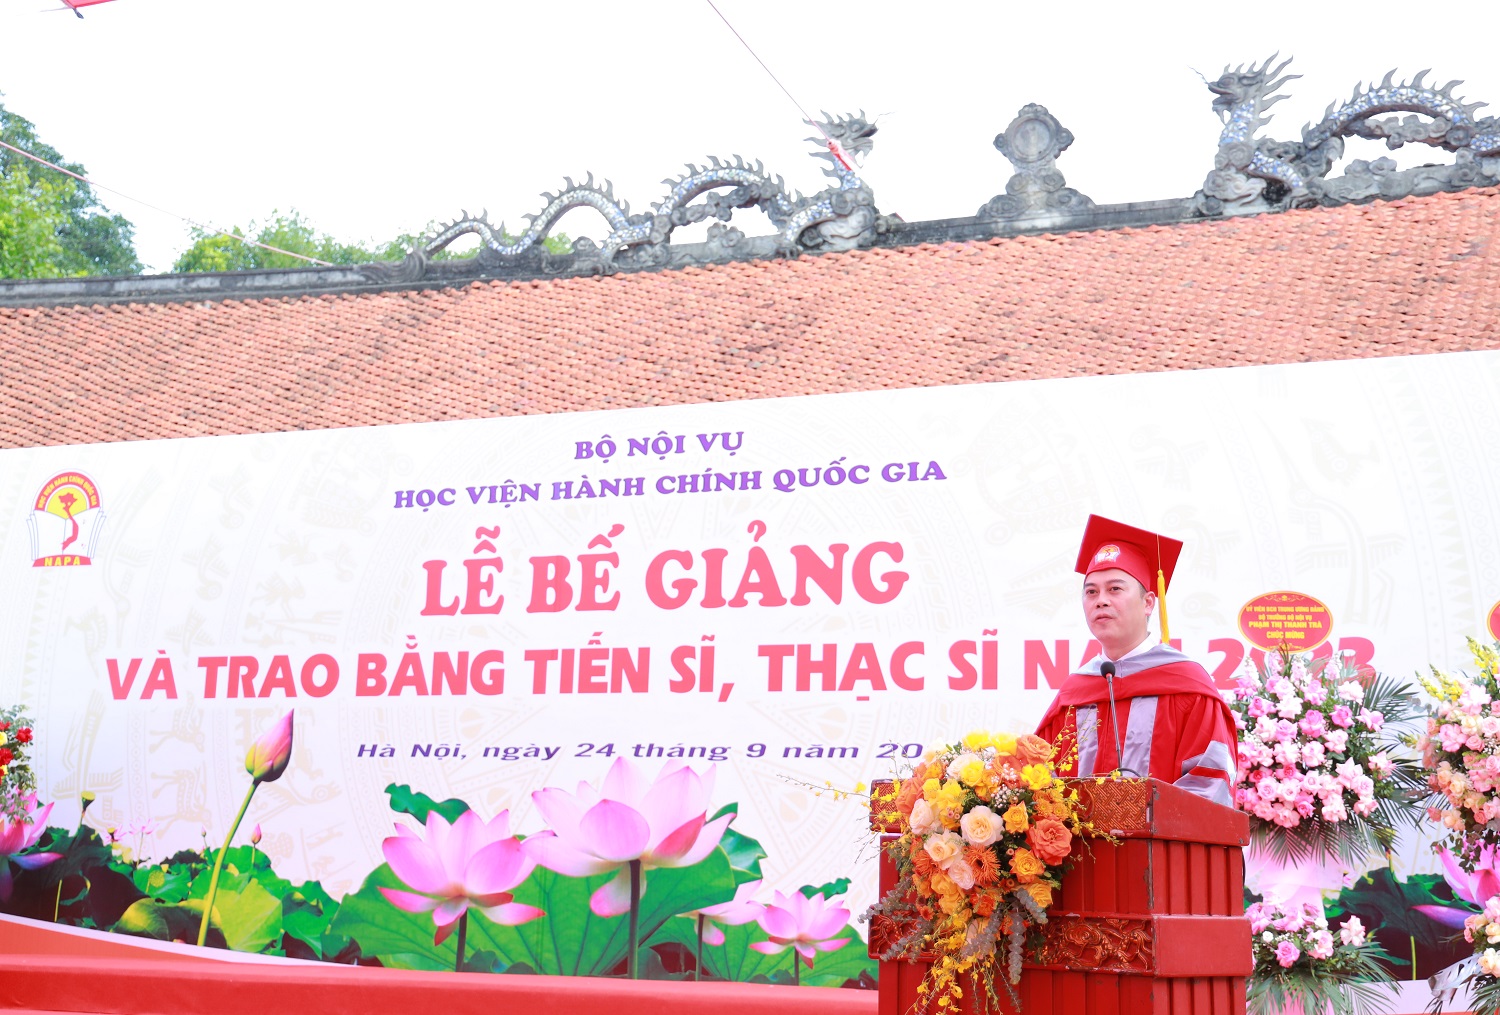 Tân Tiến sĩ Lê Hữu Toàn, đại diện các học viện gửi lời cảm ơn đến Học viện Hành chính Quốc gia cùng các vị đại biểu, khách mời tham dự Lễ Bế giảng.